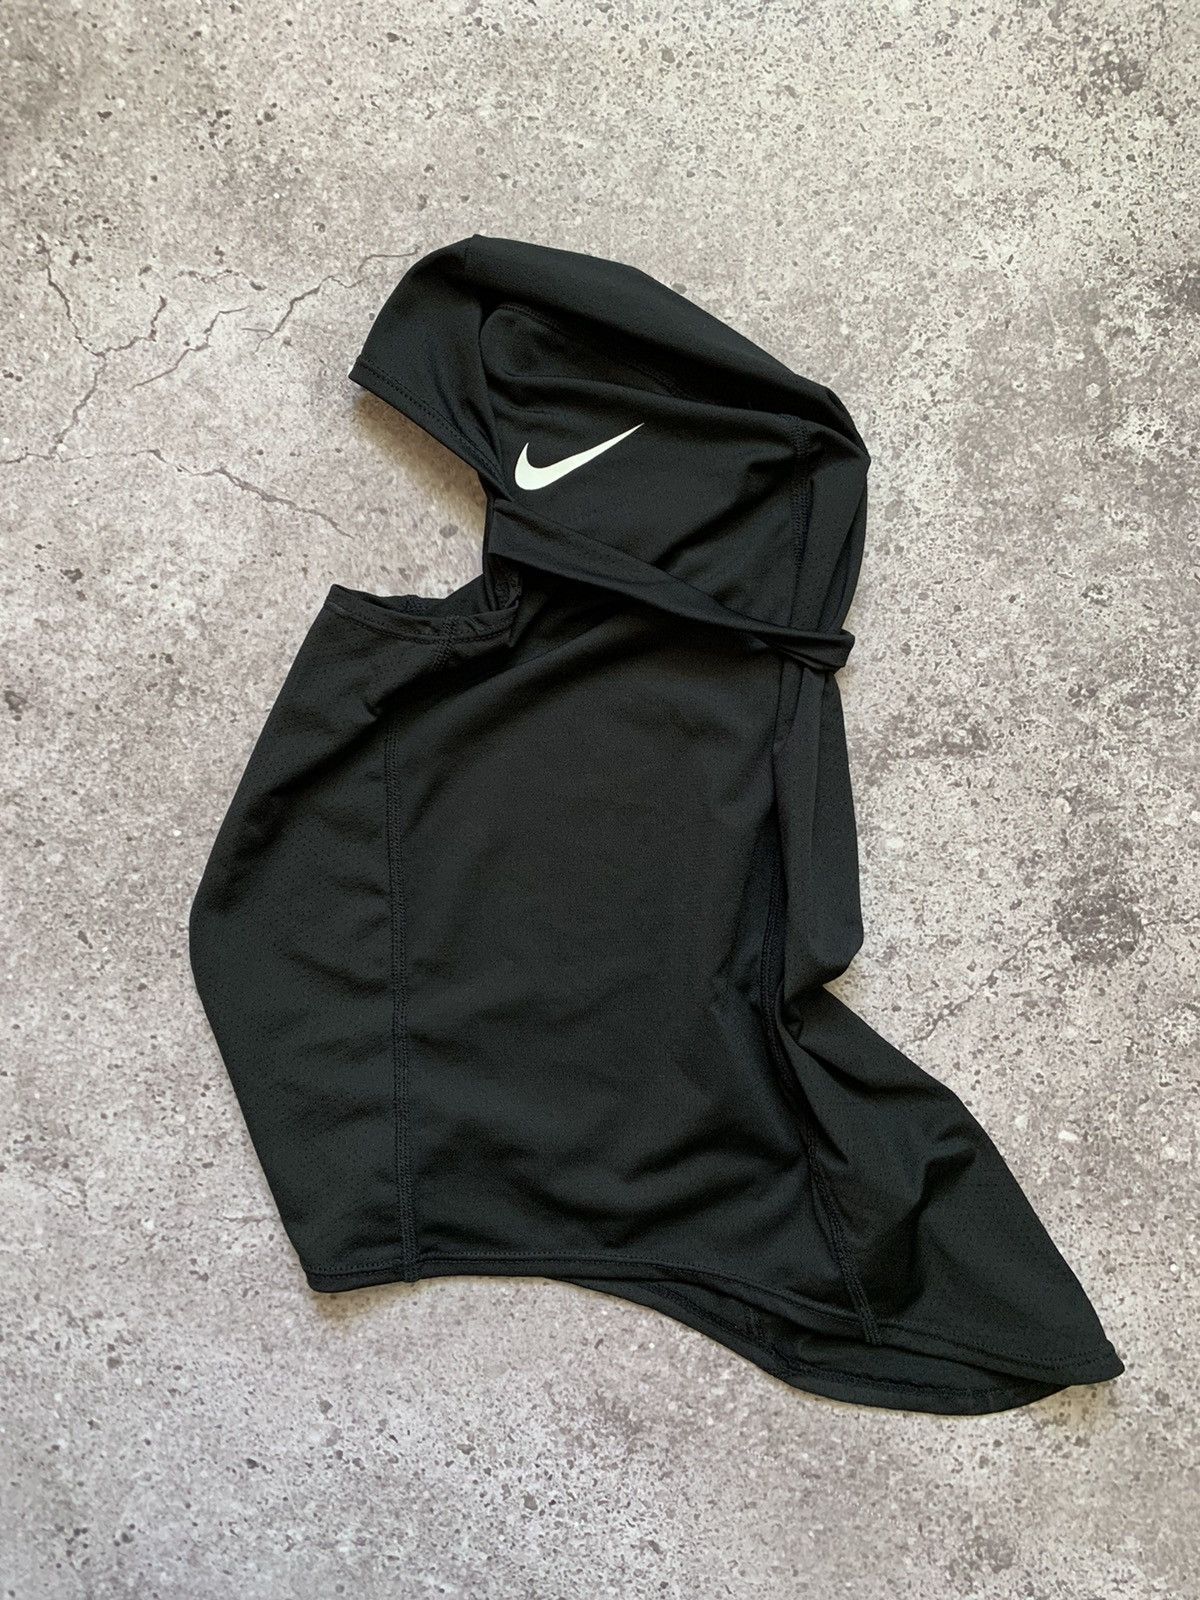 Pre-owned Drake X Nike Balaclava Hood Ski Mask In Black